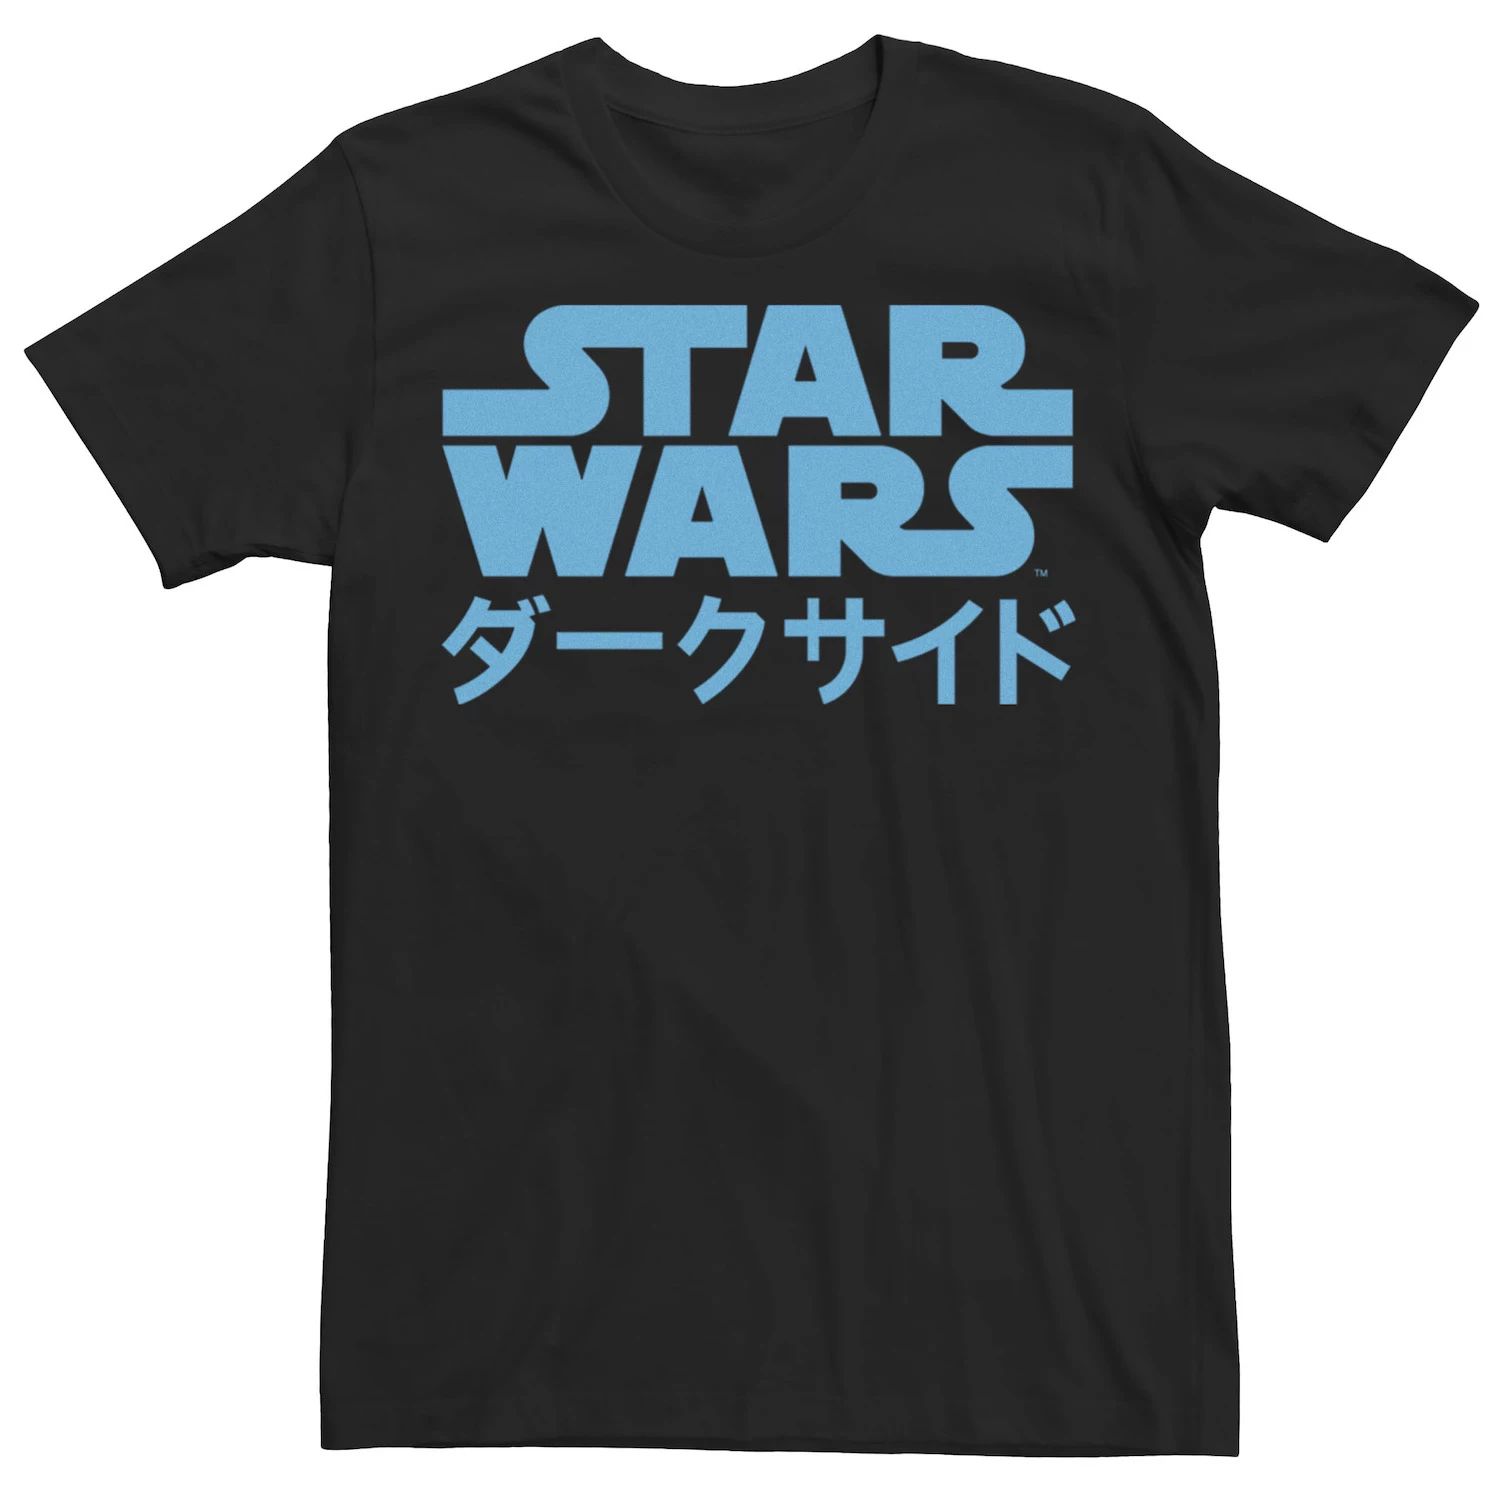 цена Мужская футболка с логотипом кандзи «Звездные войны», Черная Star Wars, черный